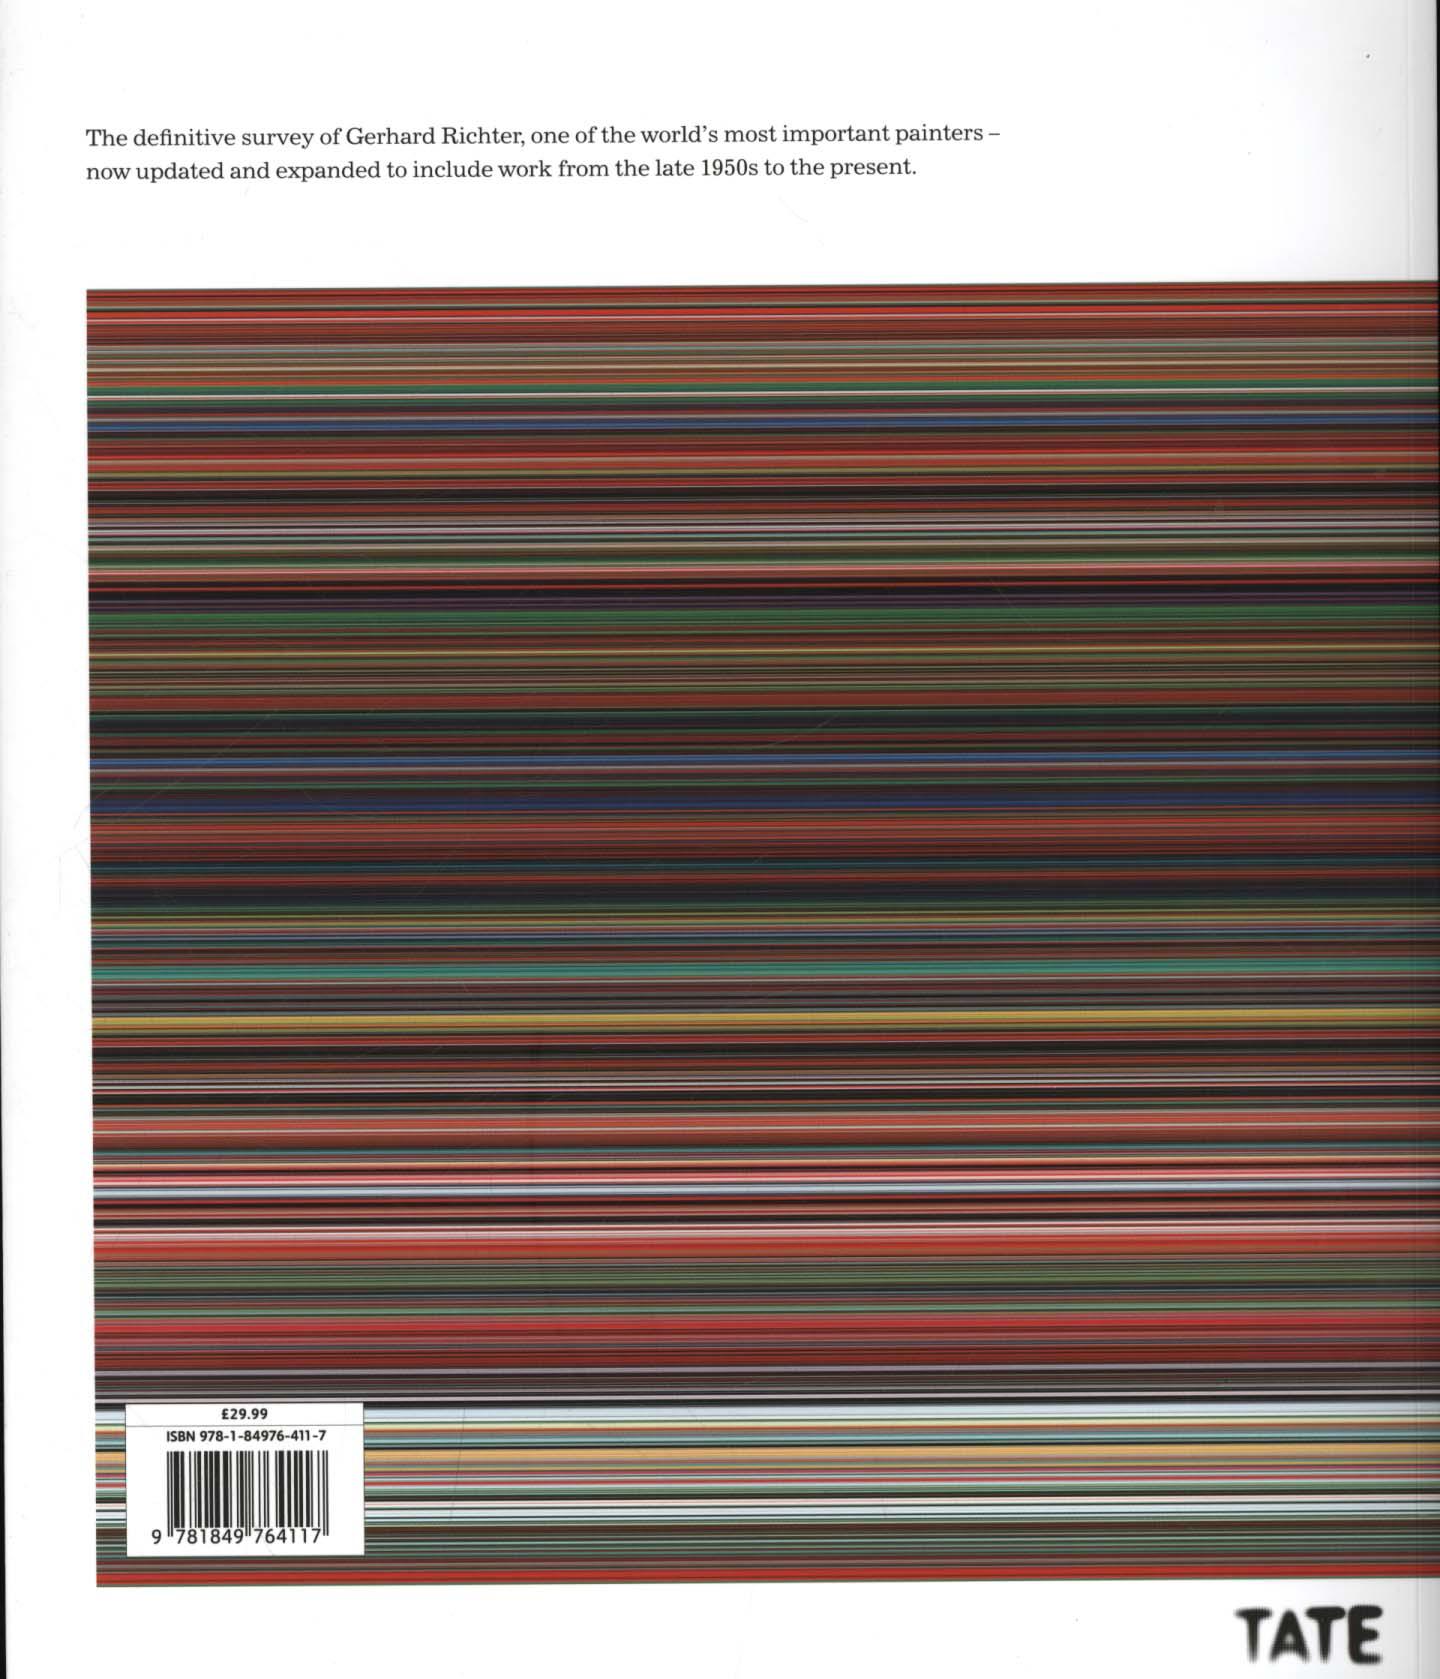 Gerhard Richter: Panorama